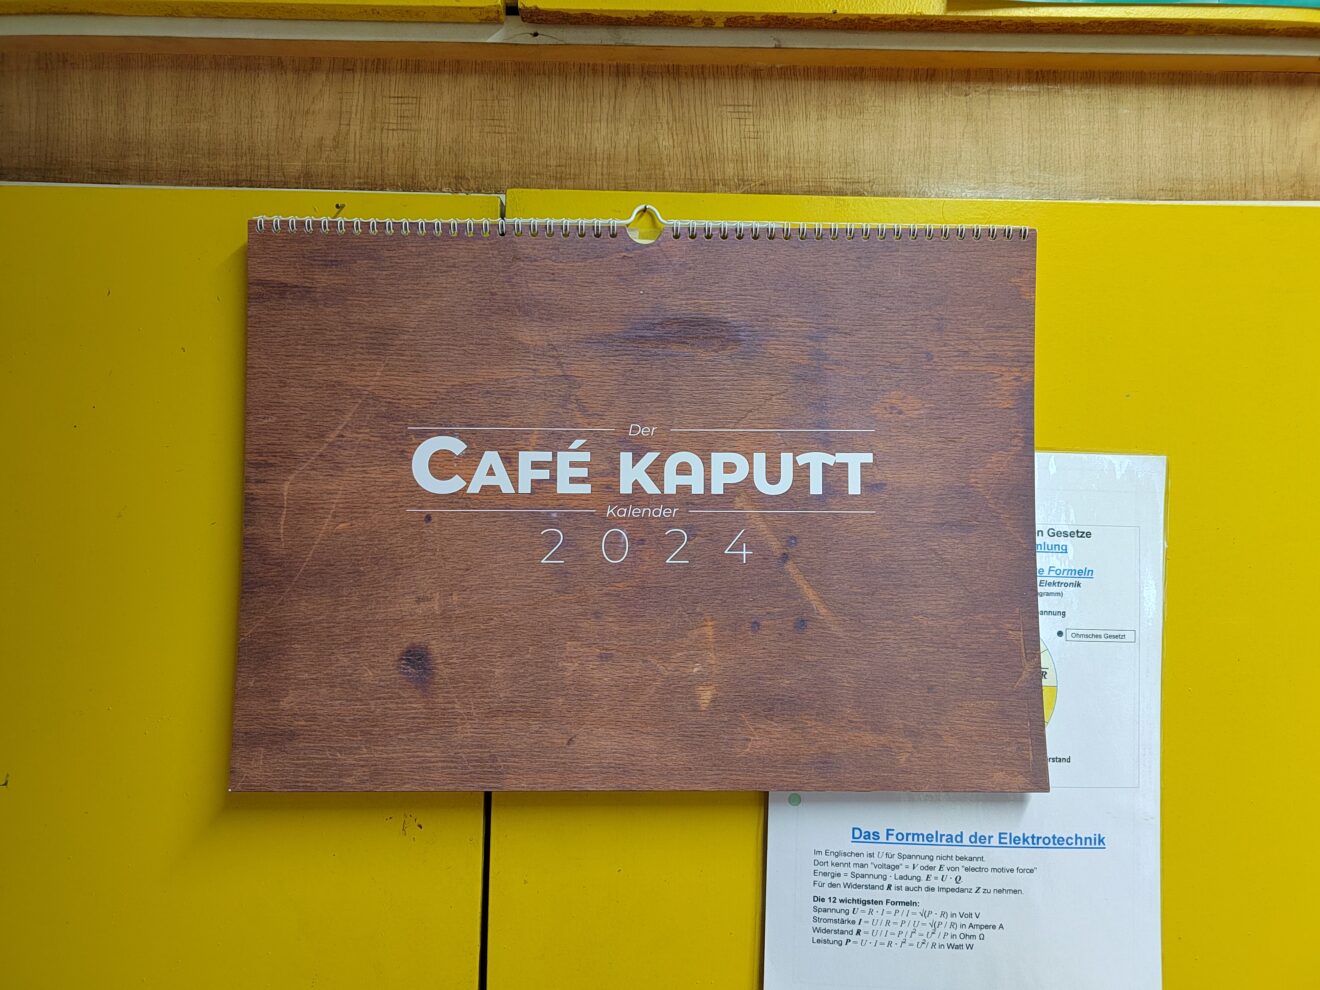 Das Bild zeigt das Deckblatt vom Café kaputt Kalender für 2024. In weißer Schrift steht "Café kaputt 2024" im Hintergrund ist eine Nahaufnahme vom Holz der Werkbank im Café kaputt zu sehen. 